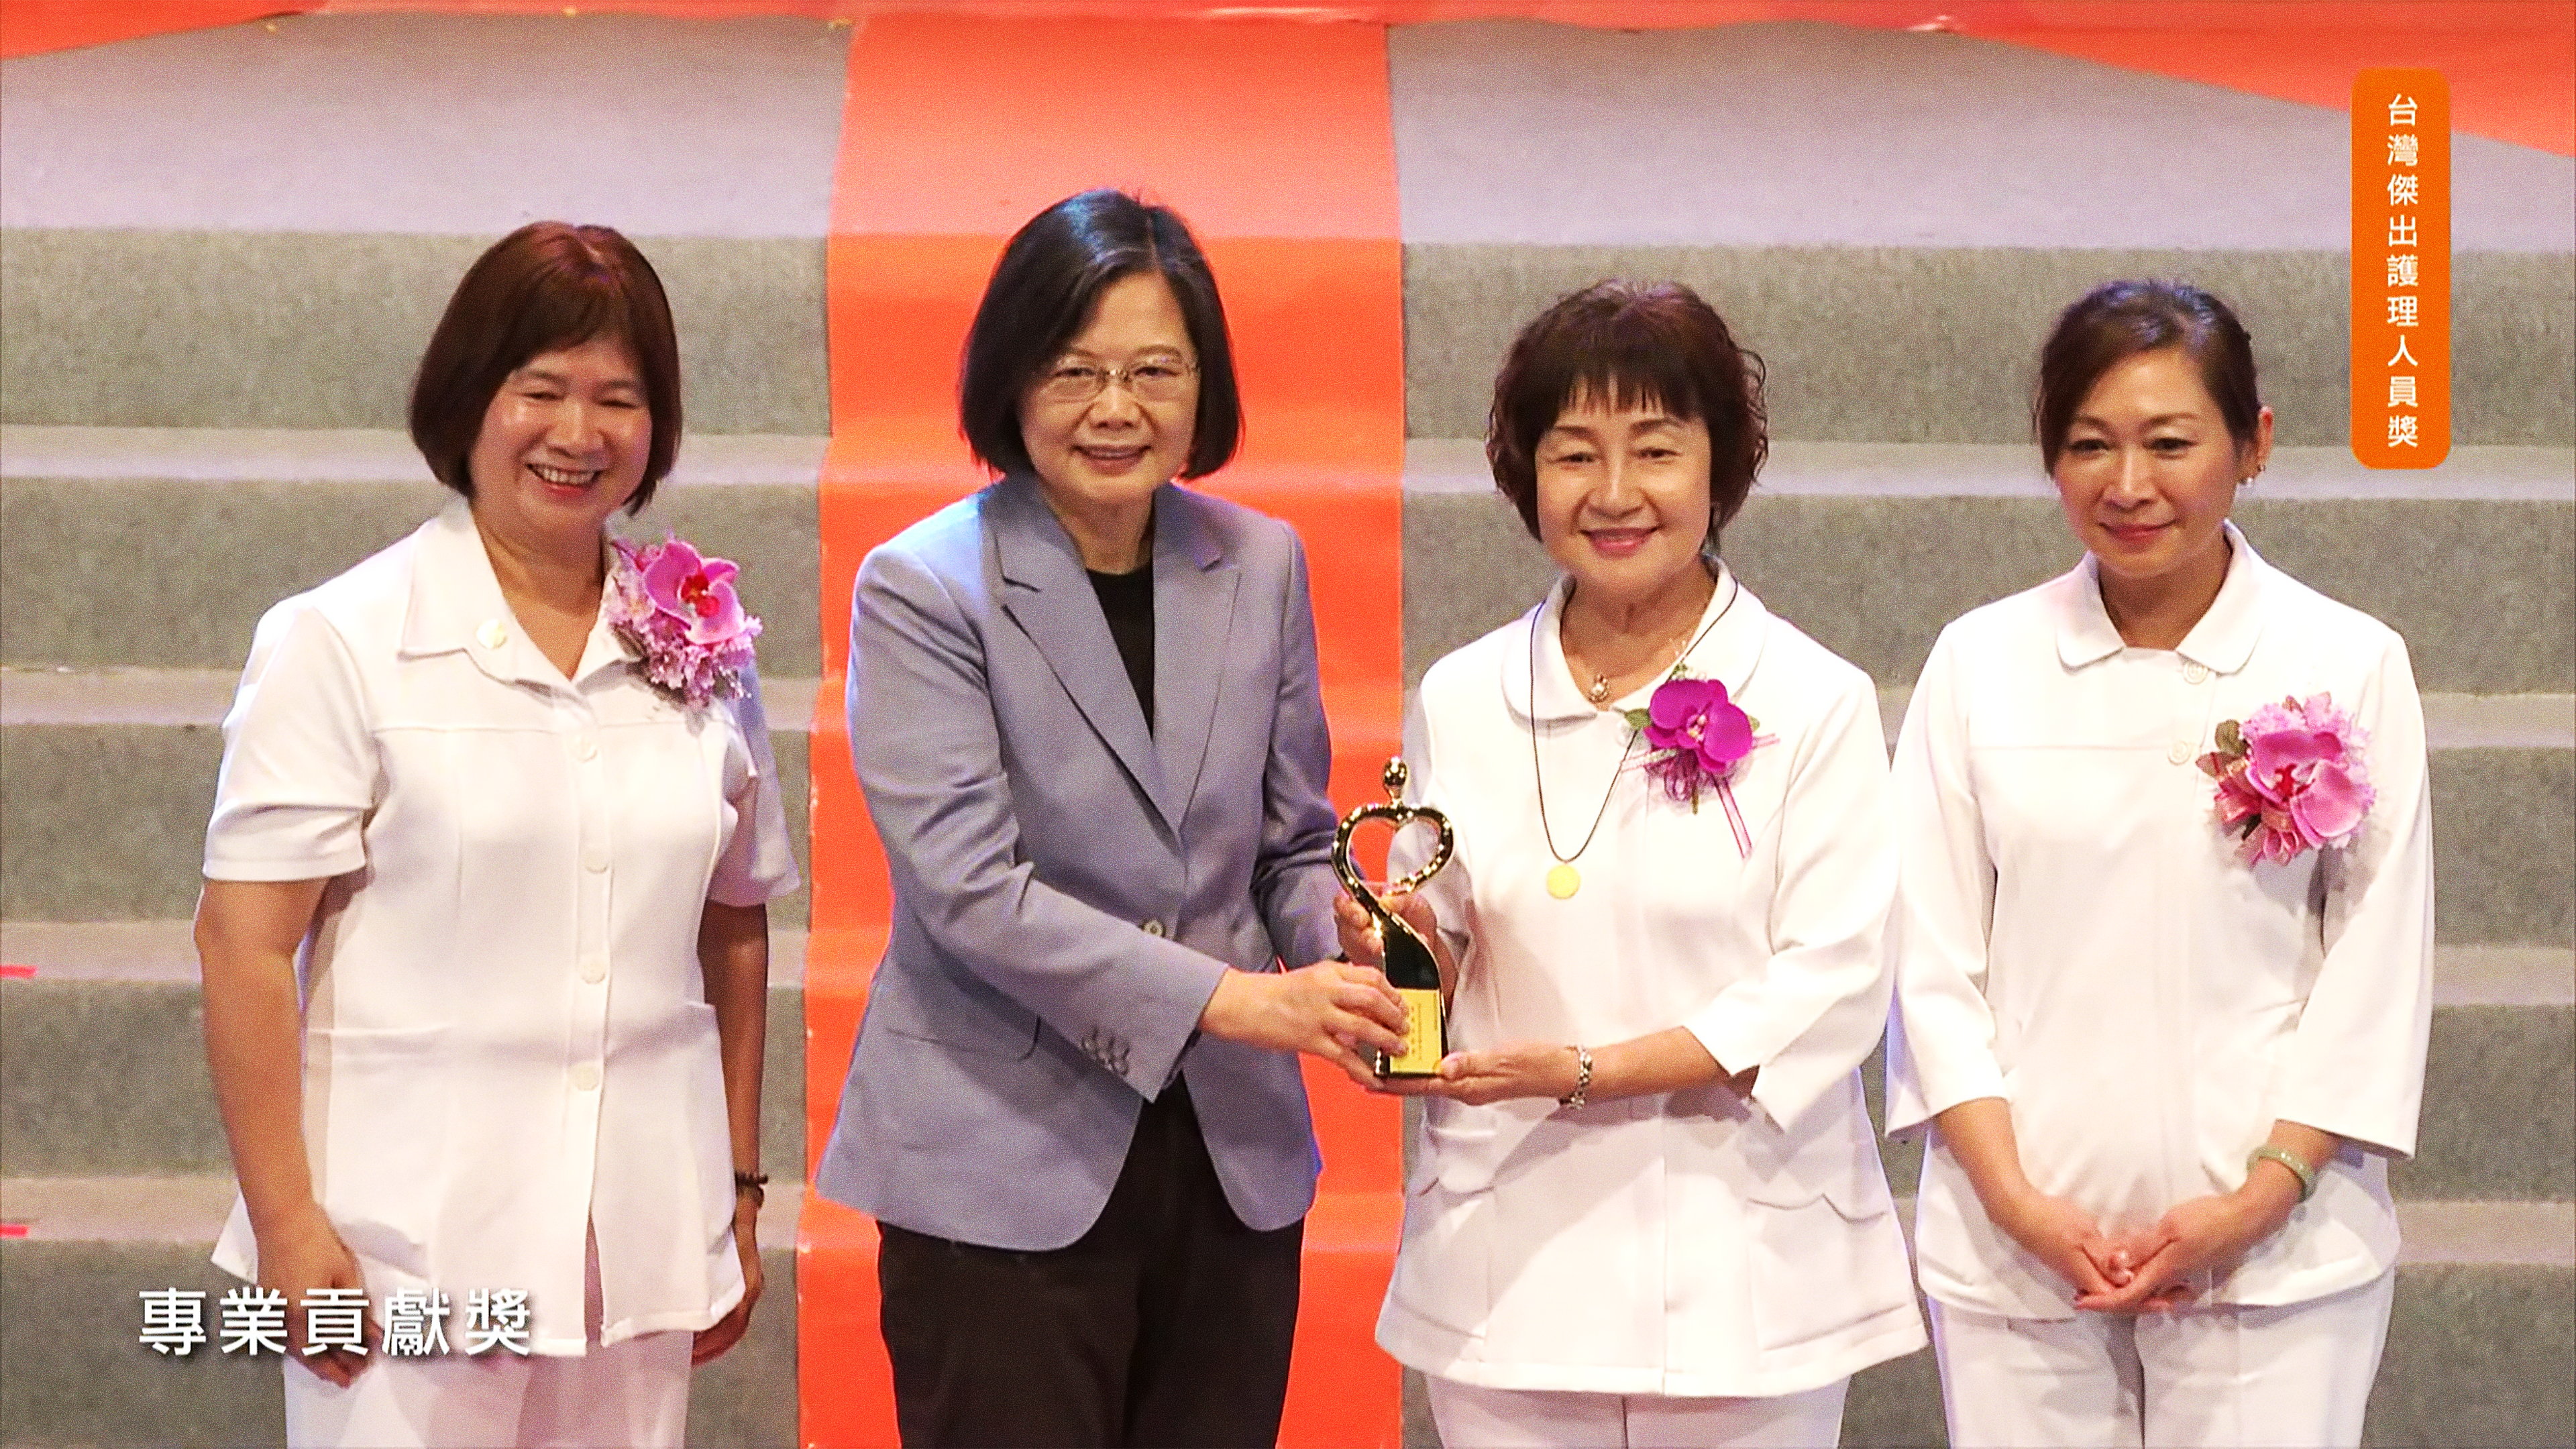 四位女士並列，其中中間兩位女士手中捧著獎盃微笑合影